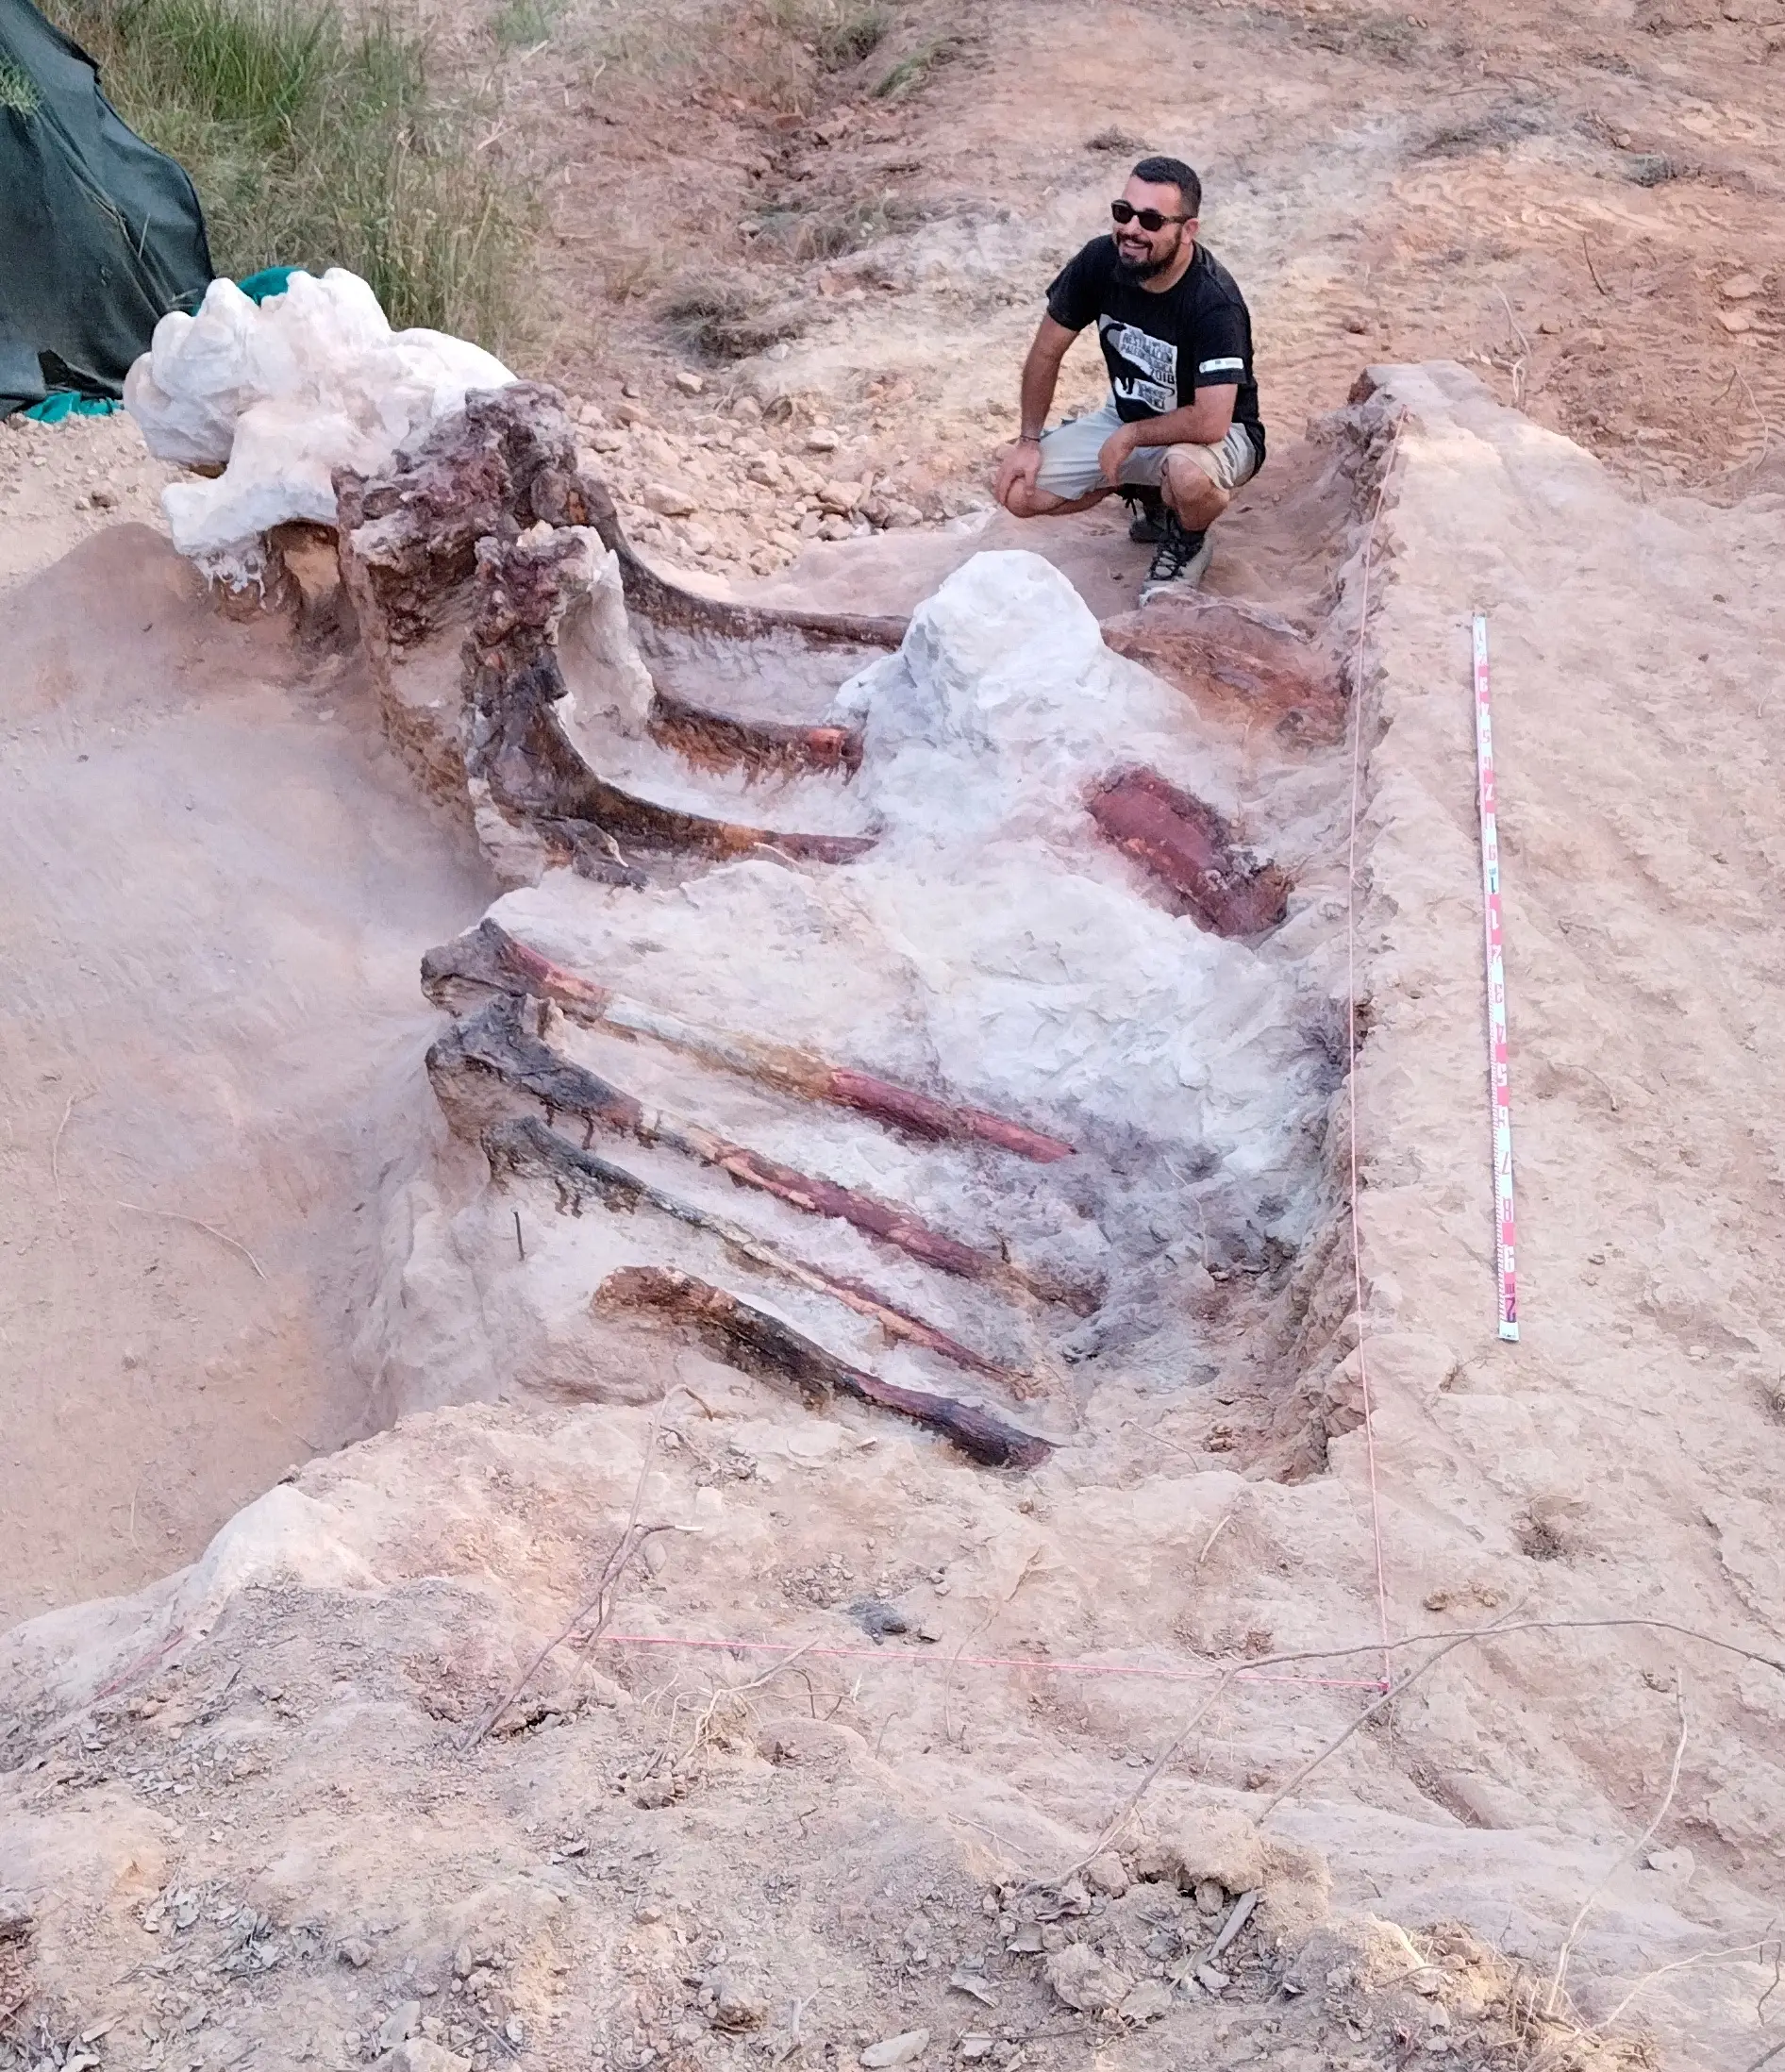 Esqueleto de dinossauro com cerca de 25 metros descoberto em Portugal